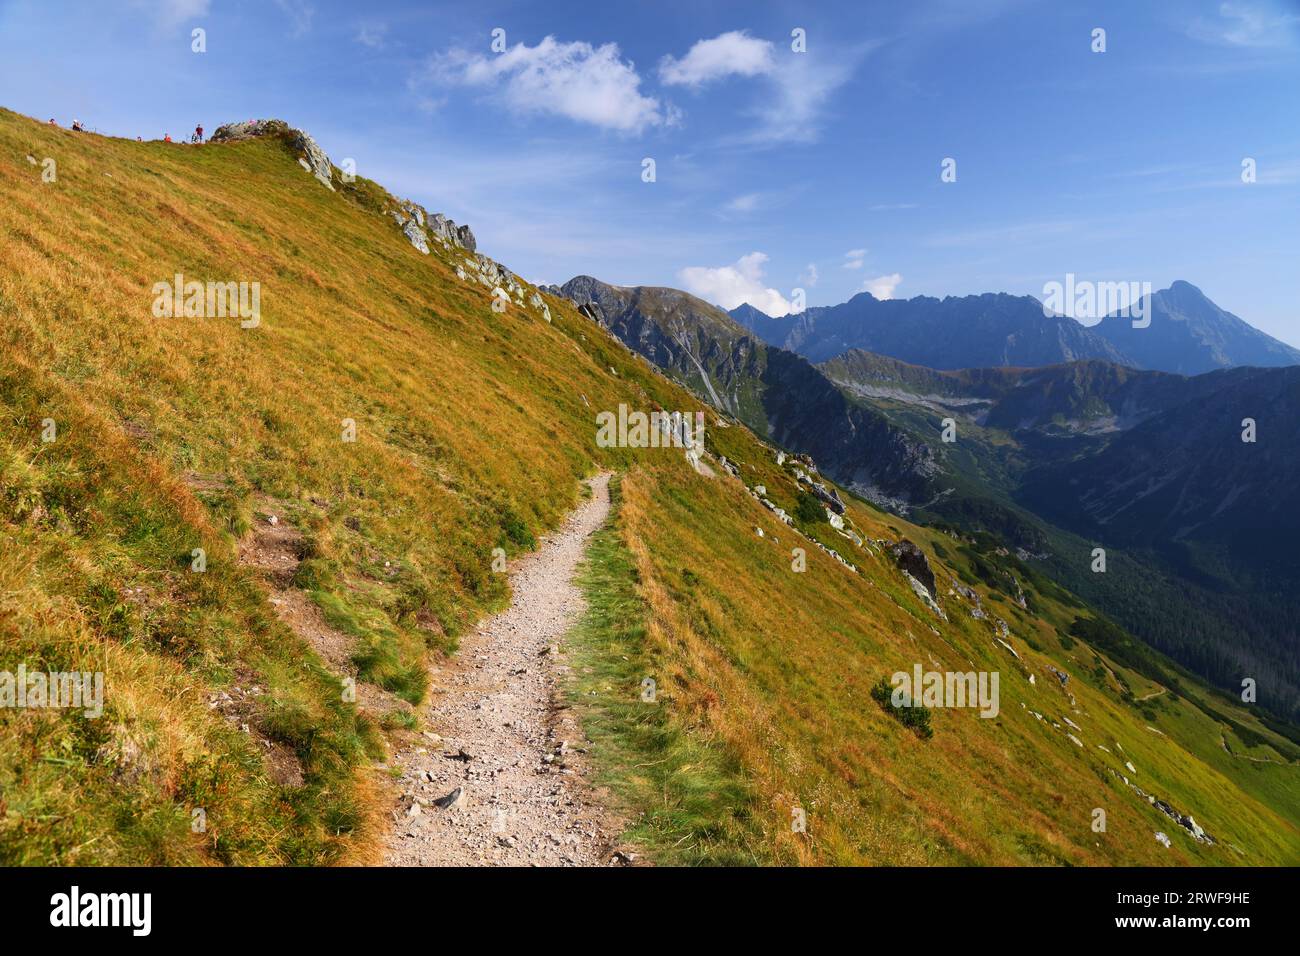 Montagne Tatra in Polonia. Sentiero rosso al monte Swinica da Kasprowy Wierch. Monte Krivan sulla destra. Foto Stock